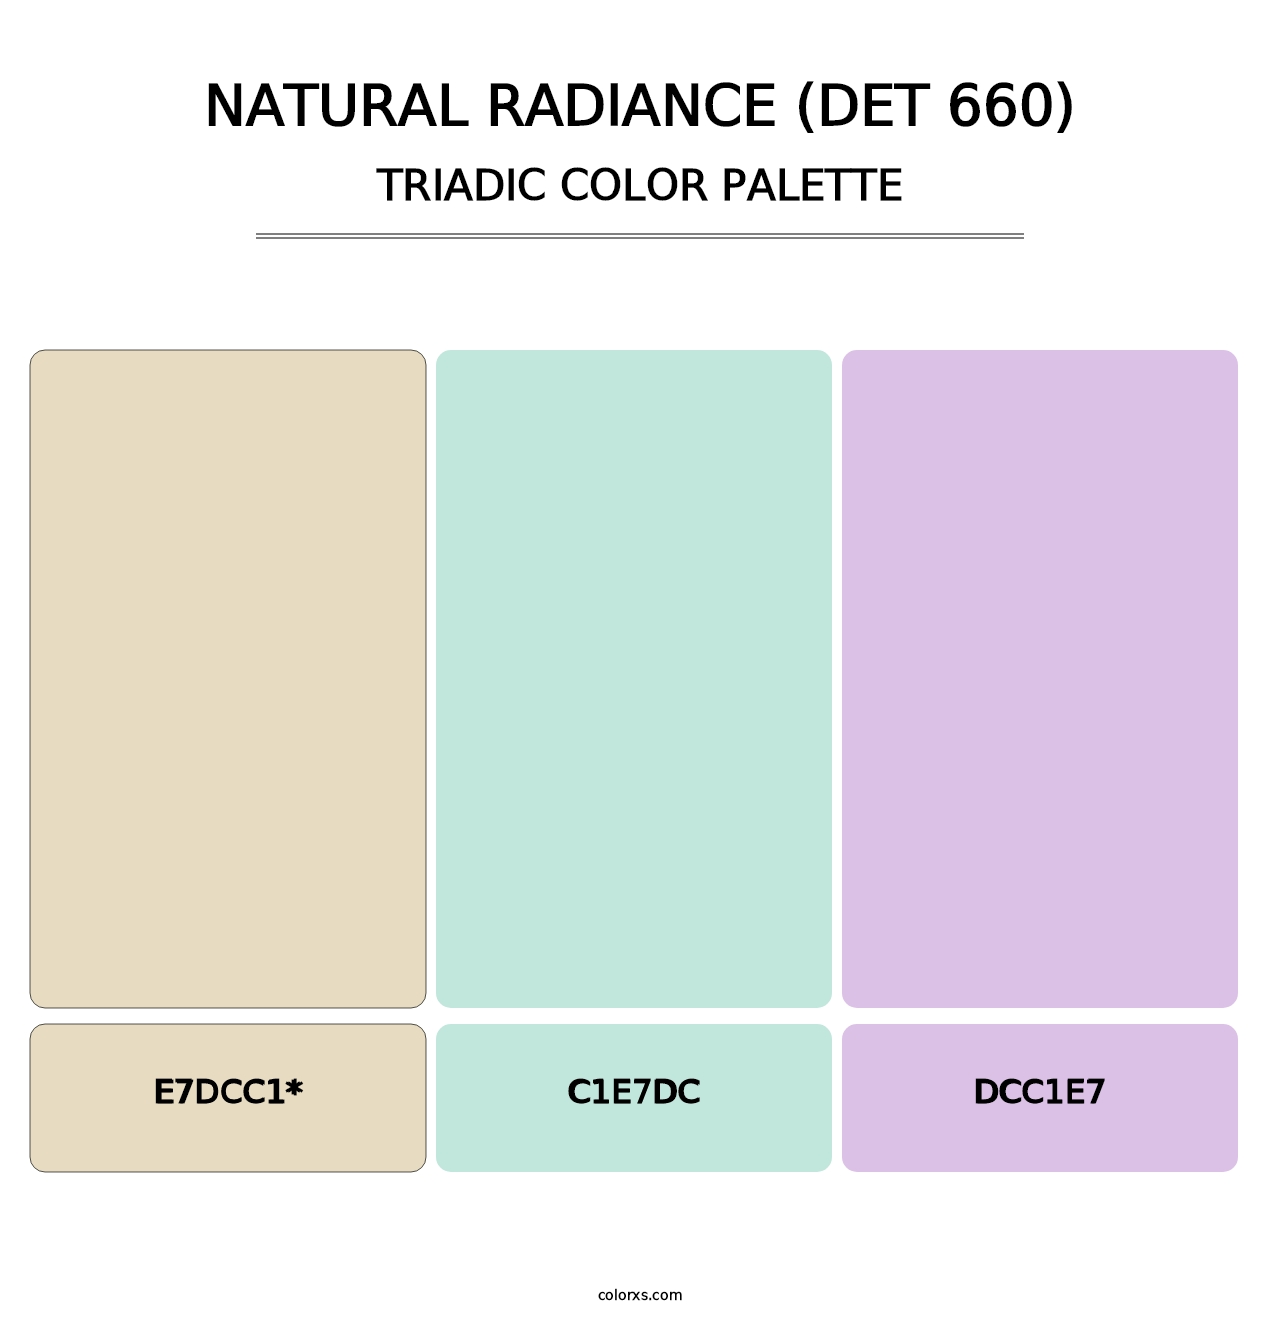 Natural Radiance (DET 660) - Triadic Color Palette